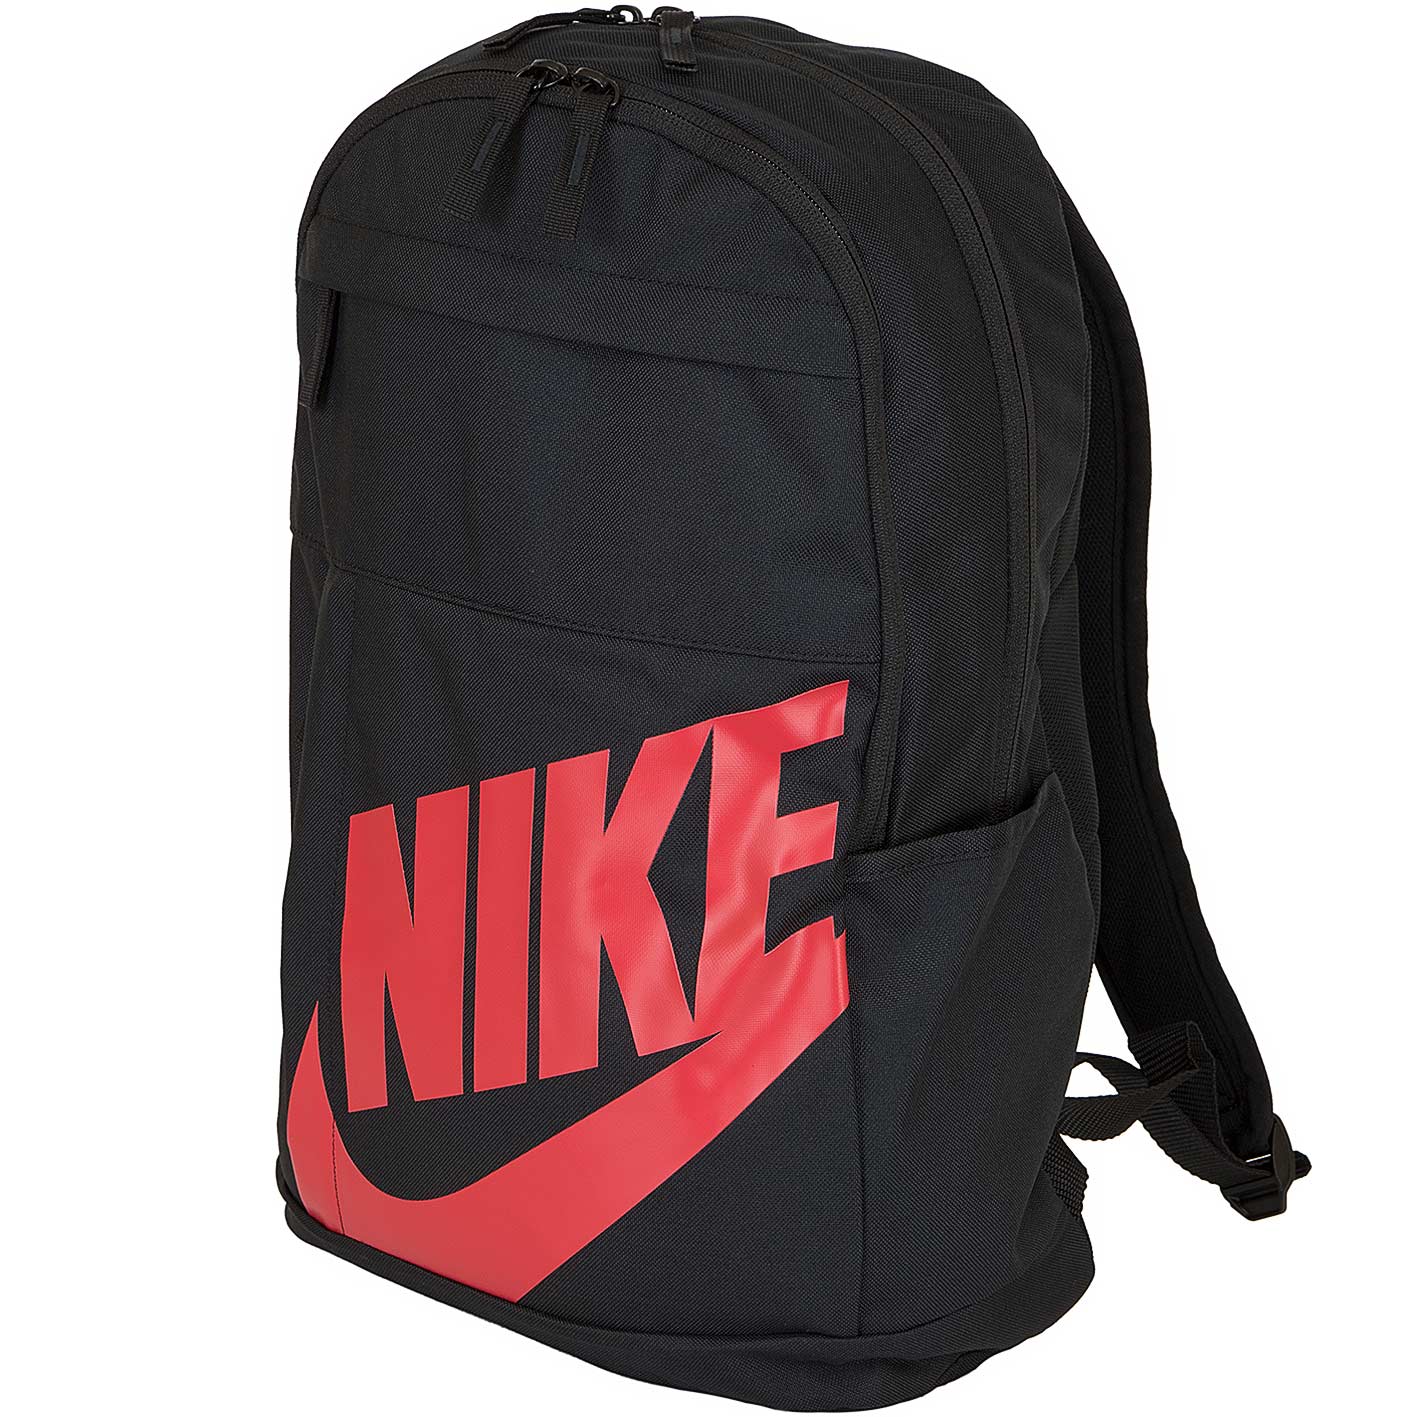 ☆ Nike Rucksack Elemental 2.0 schwarz/rot - hier bestellen!